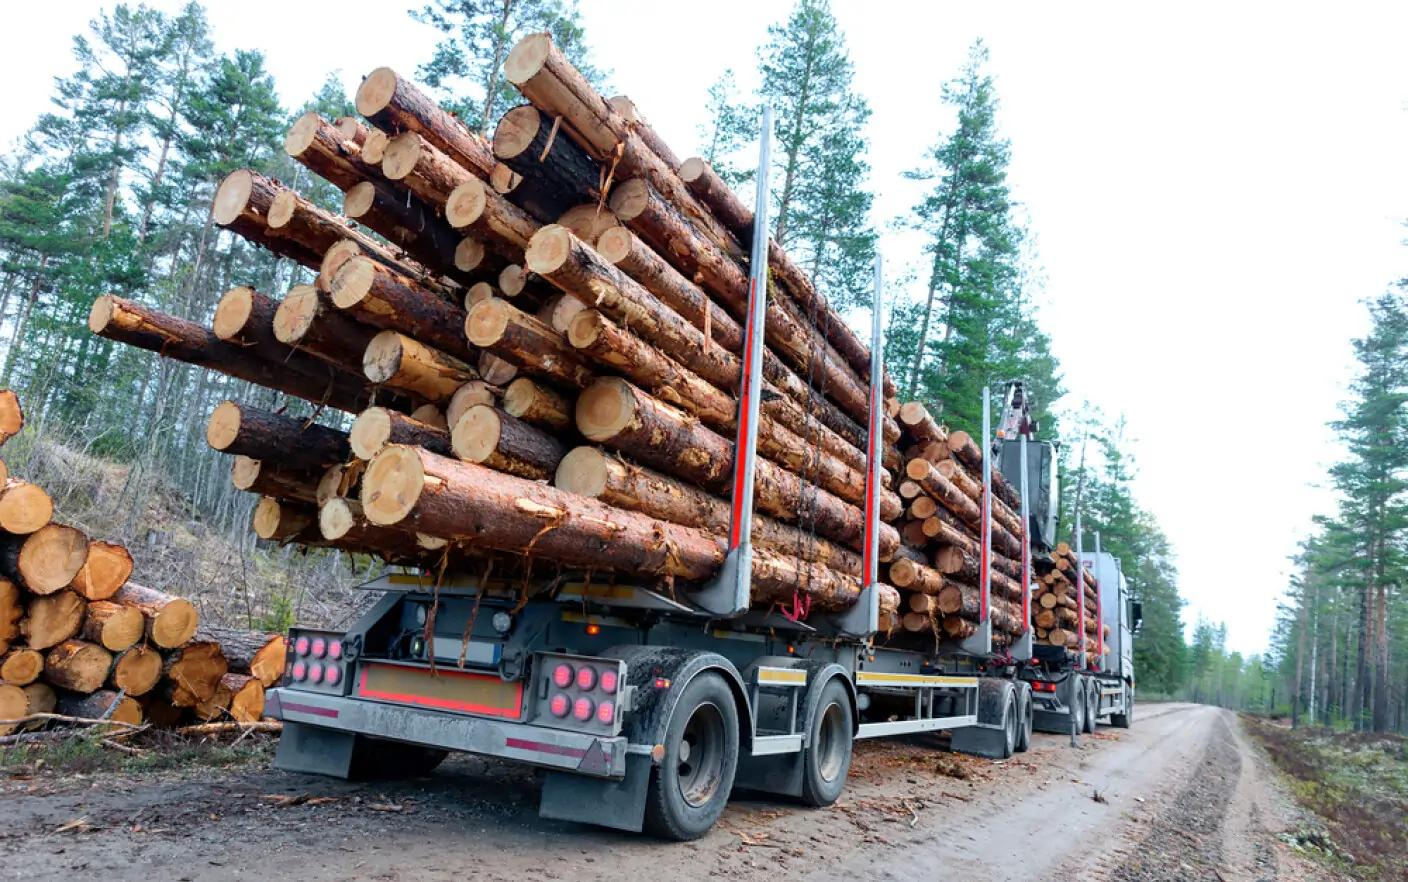 Senatorul Dragoş Popescu: ”Transportul ilegal de lemn este o problemă foarte serioasă a României”